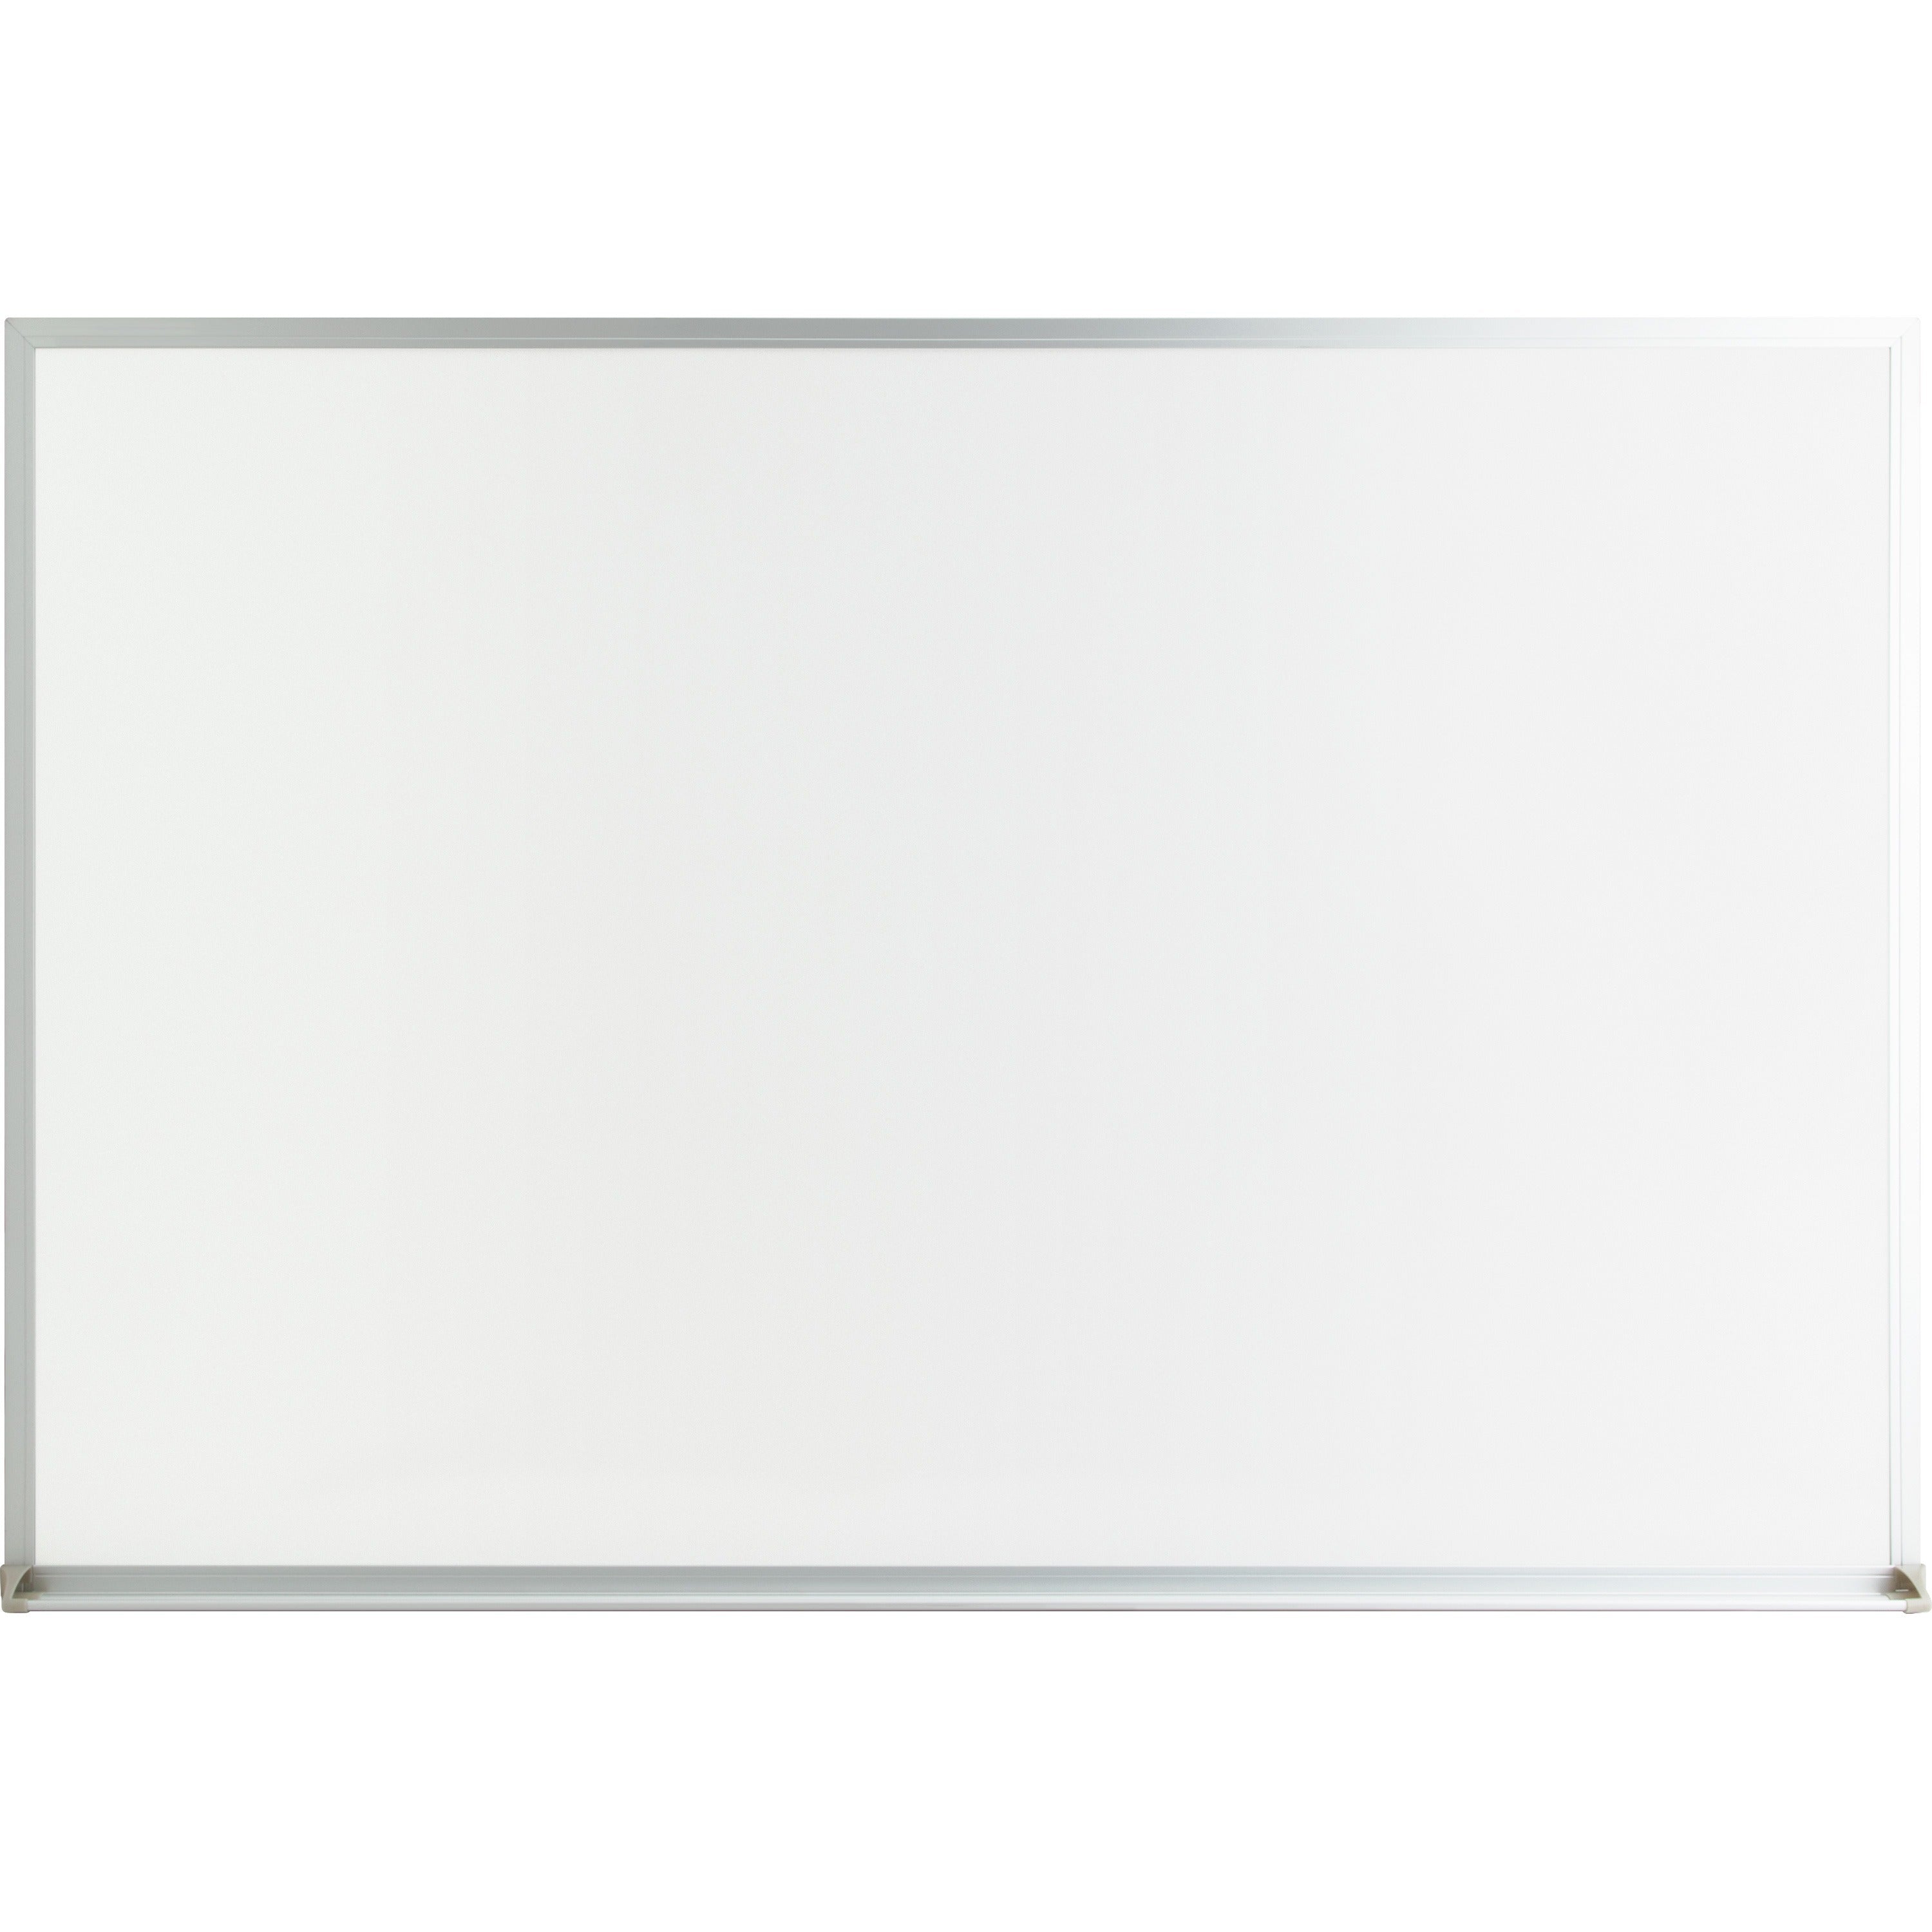 lorell-economy-dry-erase-board-36-3-ft-width-x-24-2-ft-height-white-melamine-surface-white-aluminum-frame-rectangle-1-each_llr19770 - 1